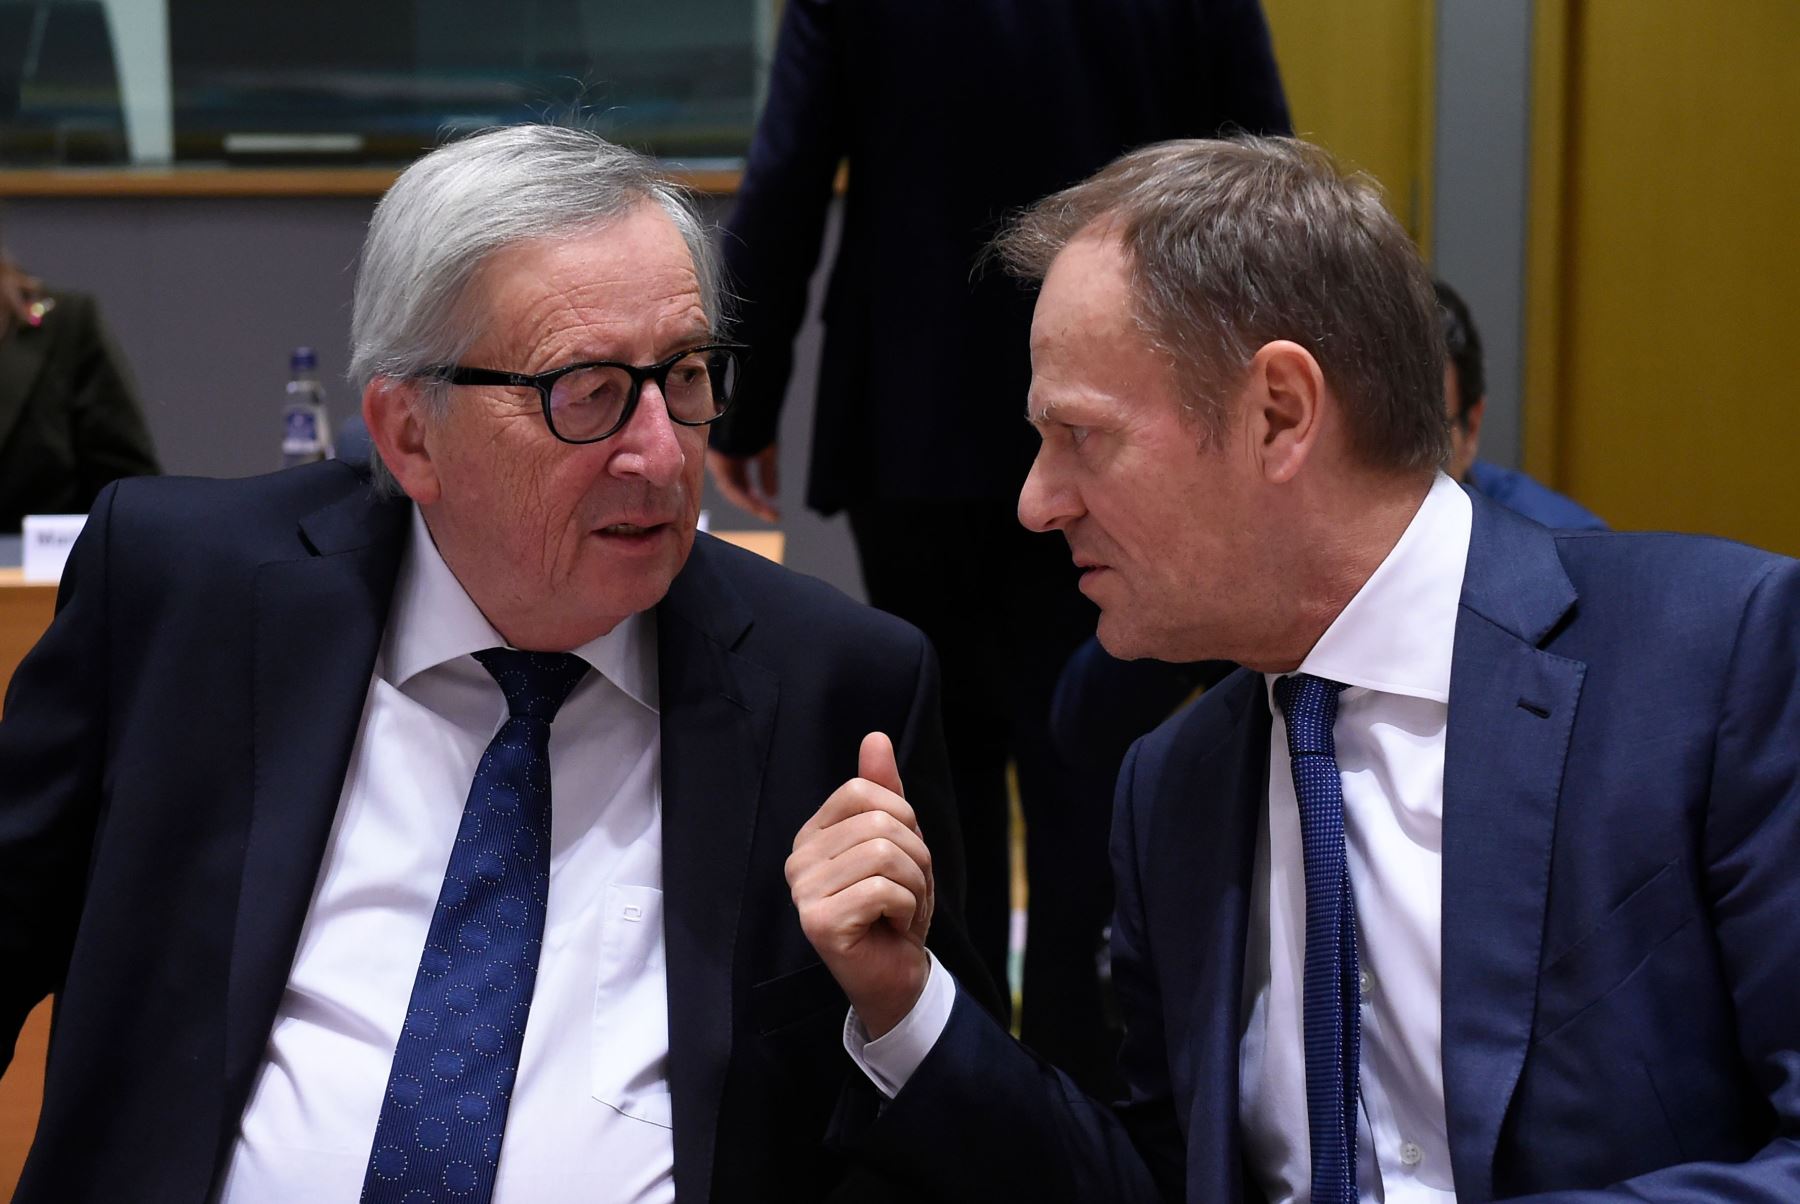 El presidente de la Comisión Europea, Jean-Claude Juncker (izquierda), conversa con el presidente del Consejo Europeo, Donald Tusk (derecha), durante una cumbre social tripartita de la Unión Europea. Foto: AFP.